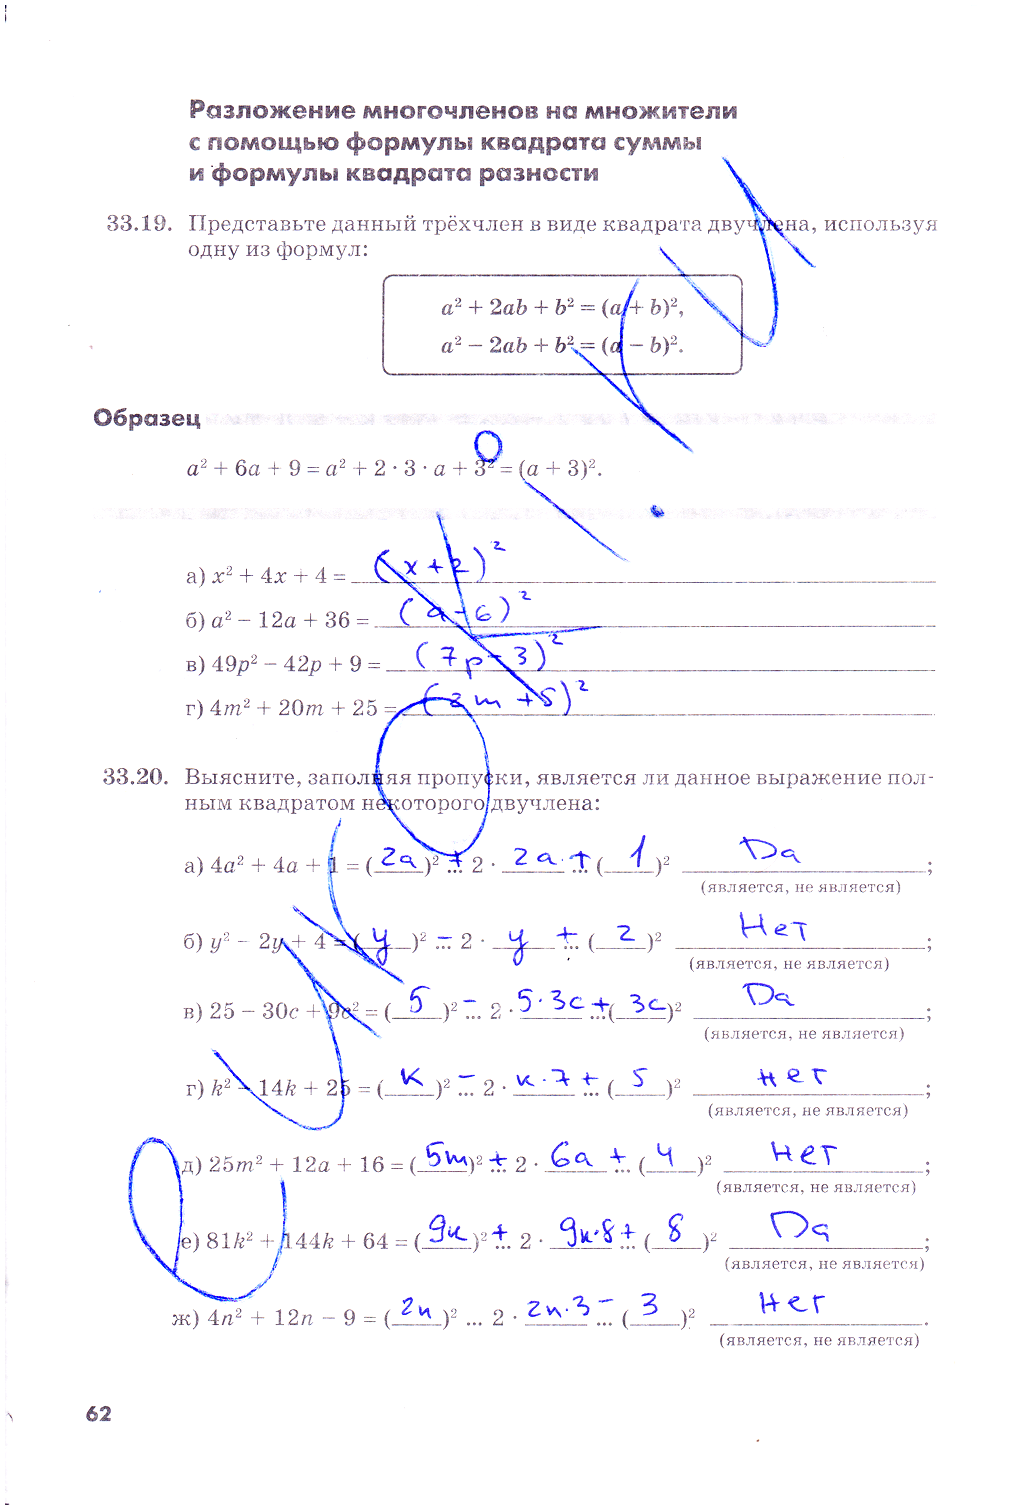 гдз 7 класс рабочая тетрадь часть 2 страница 62 алгебра Зубарева, Мильштейн